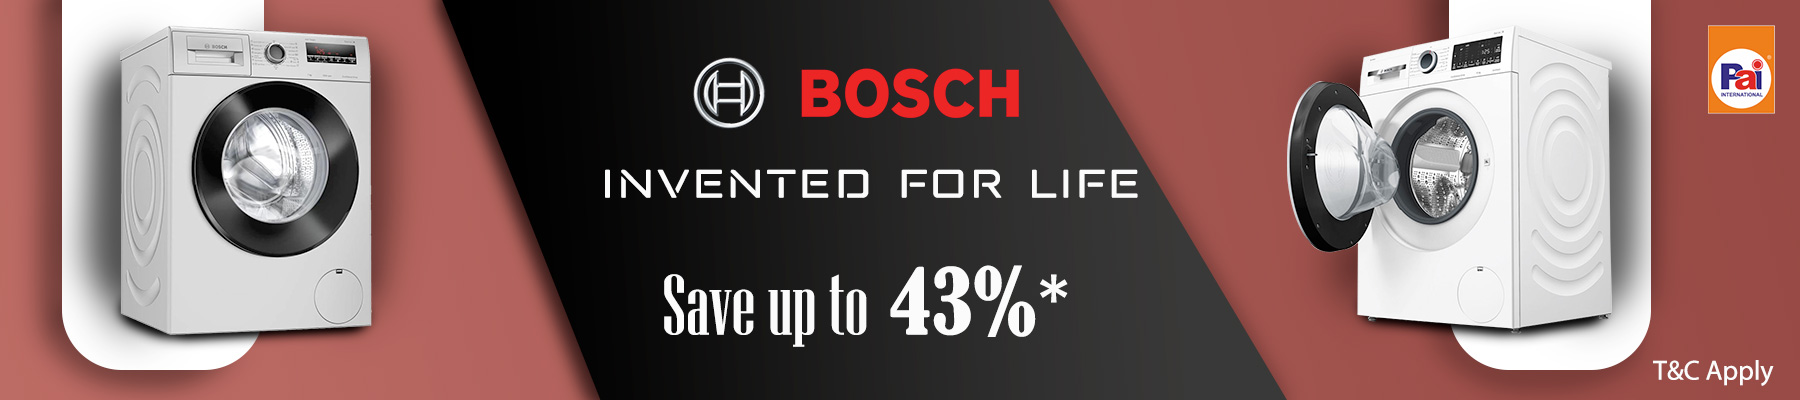 Bosch deals